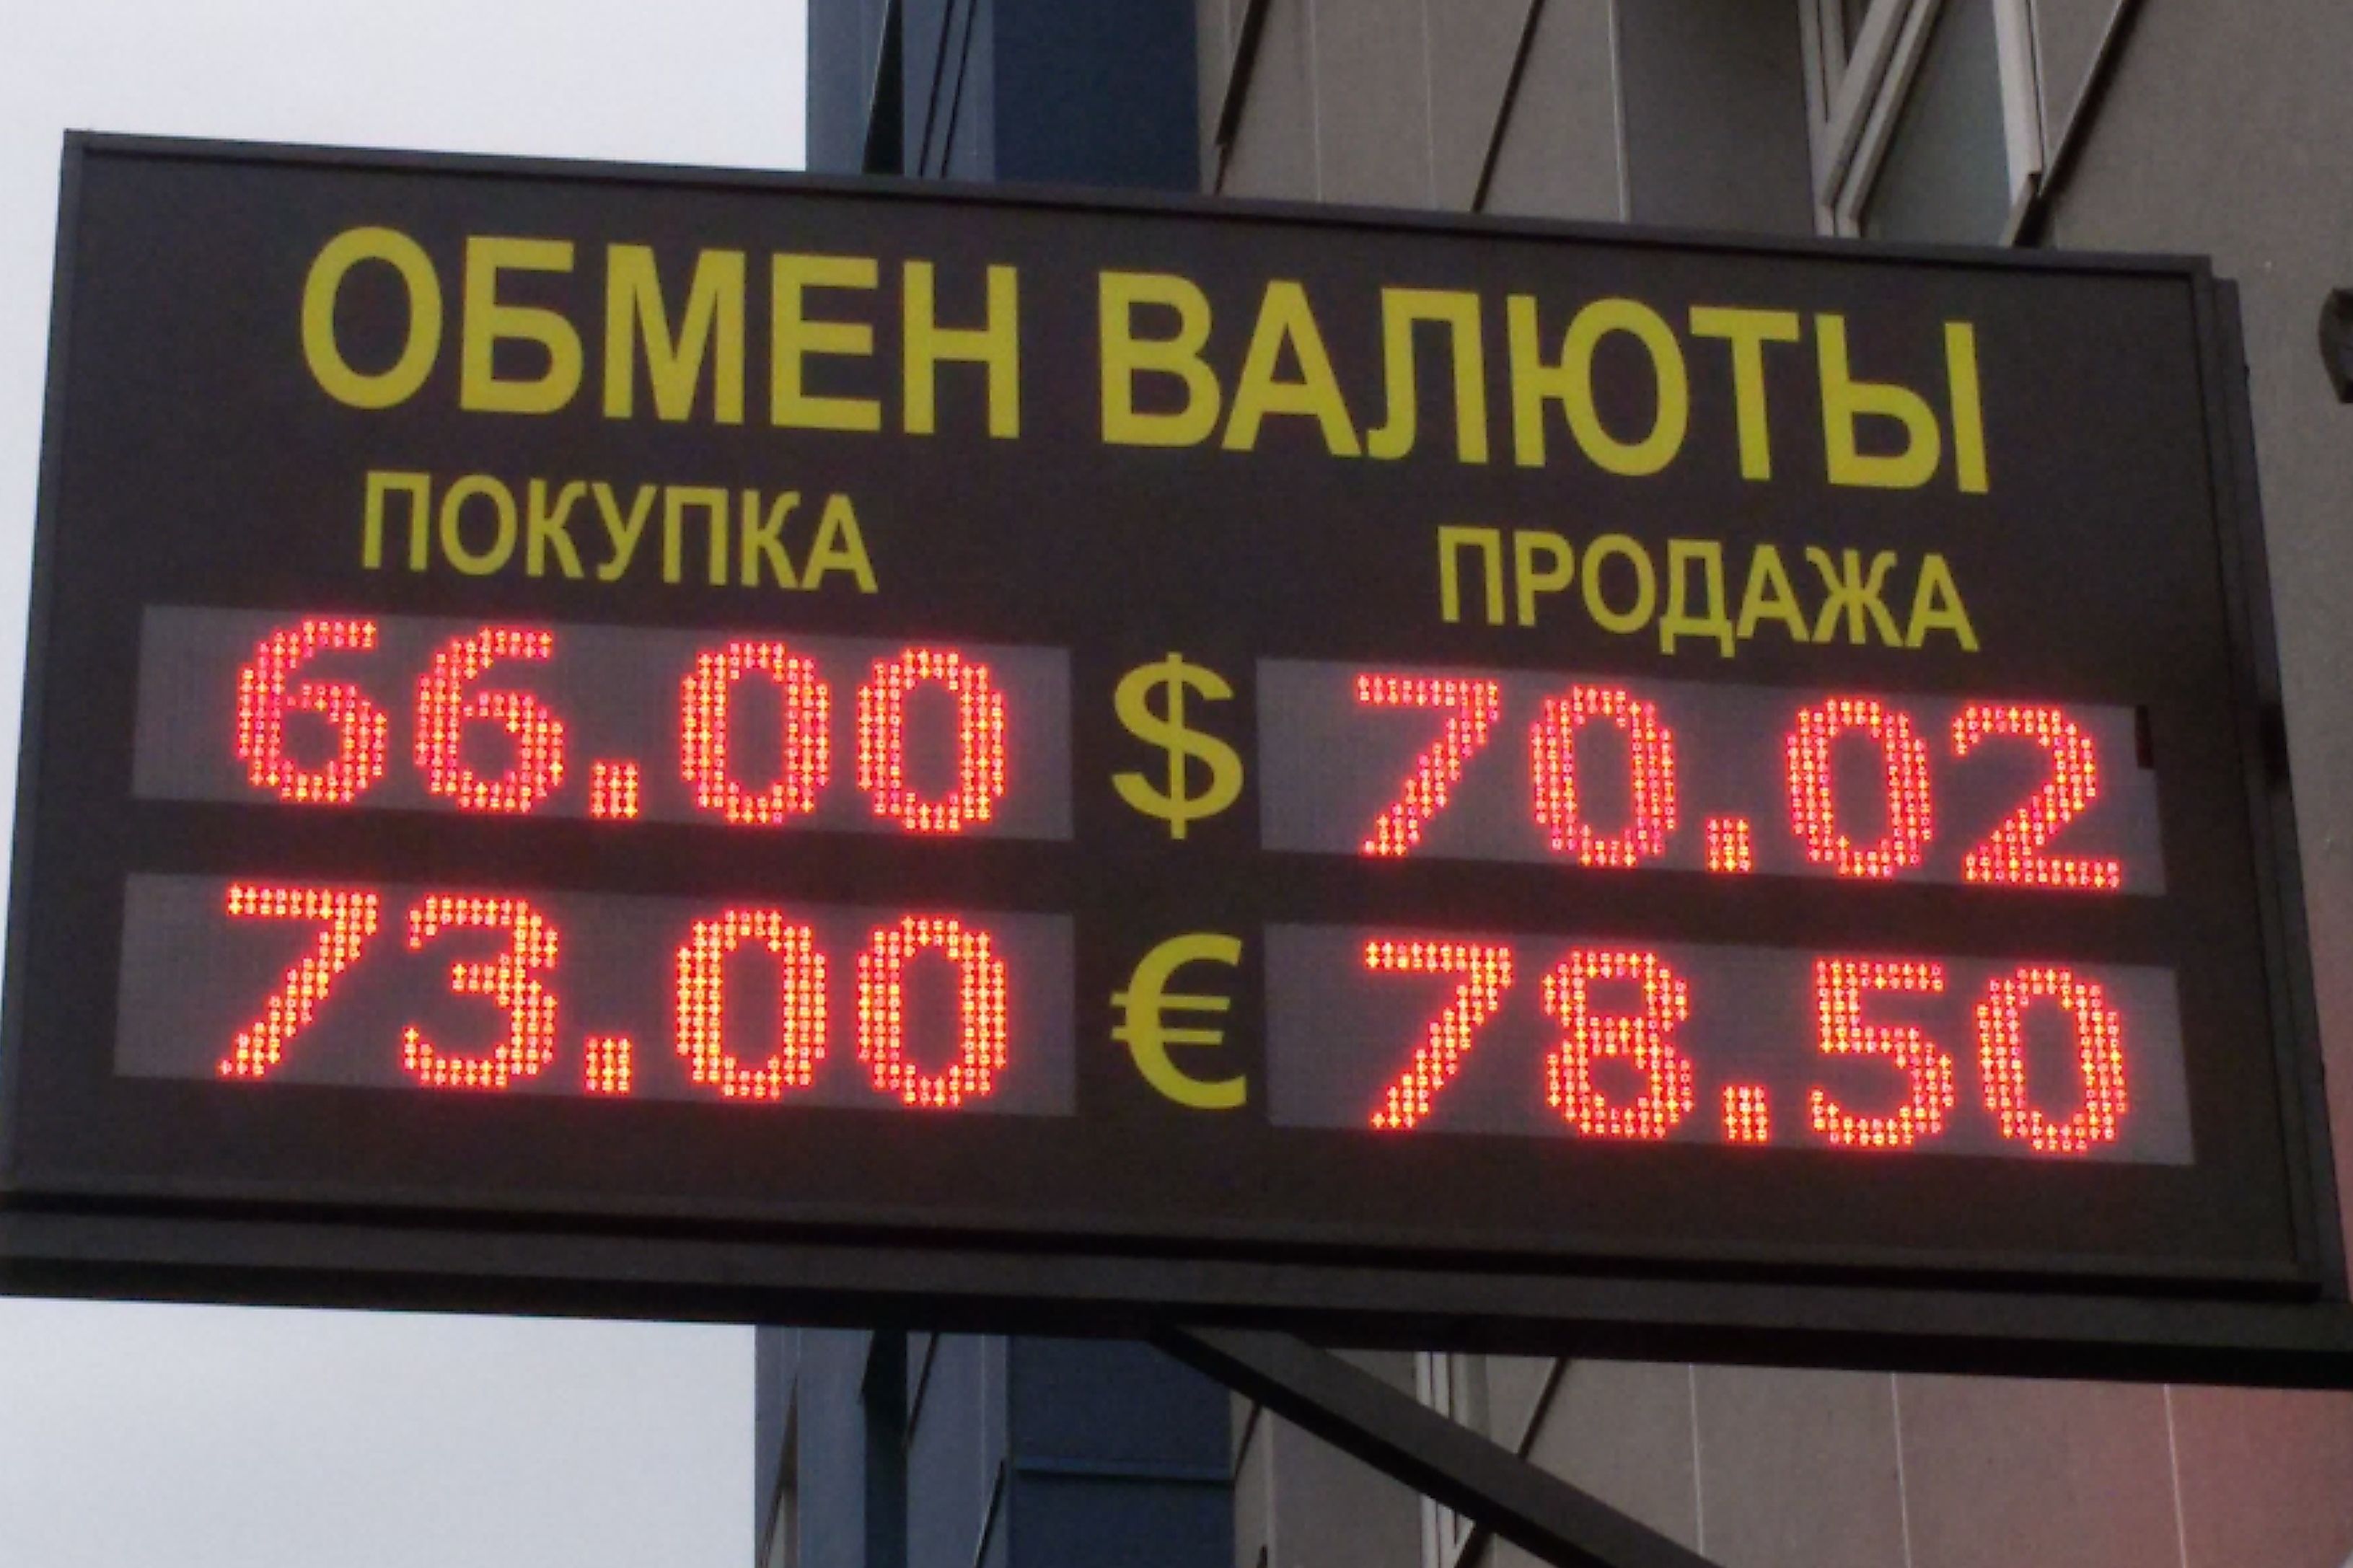 Обмен валюты в россию биткоин сегвита